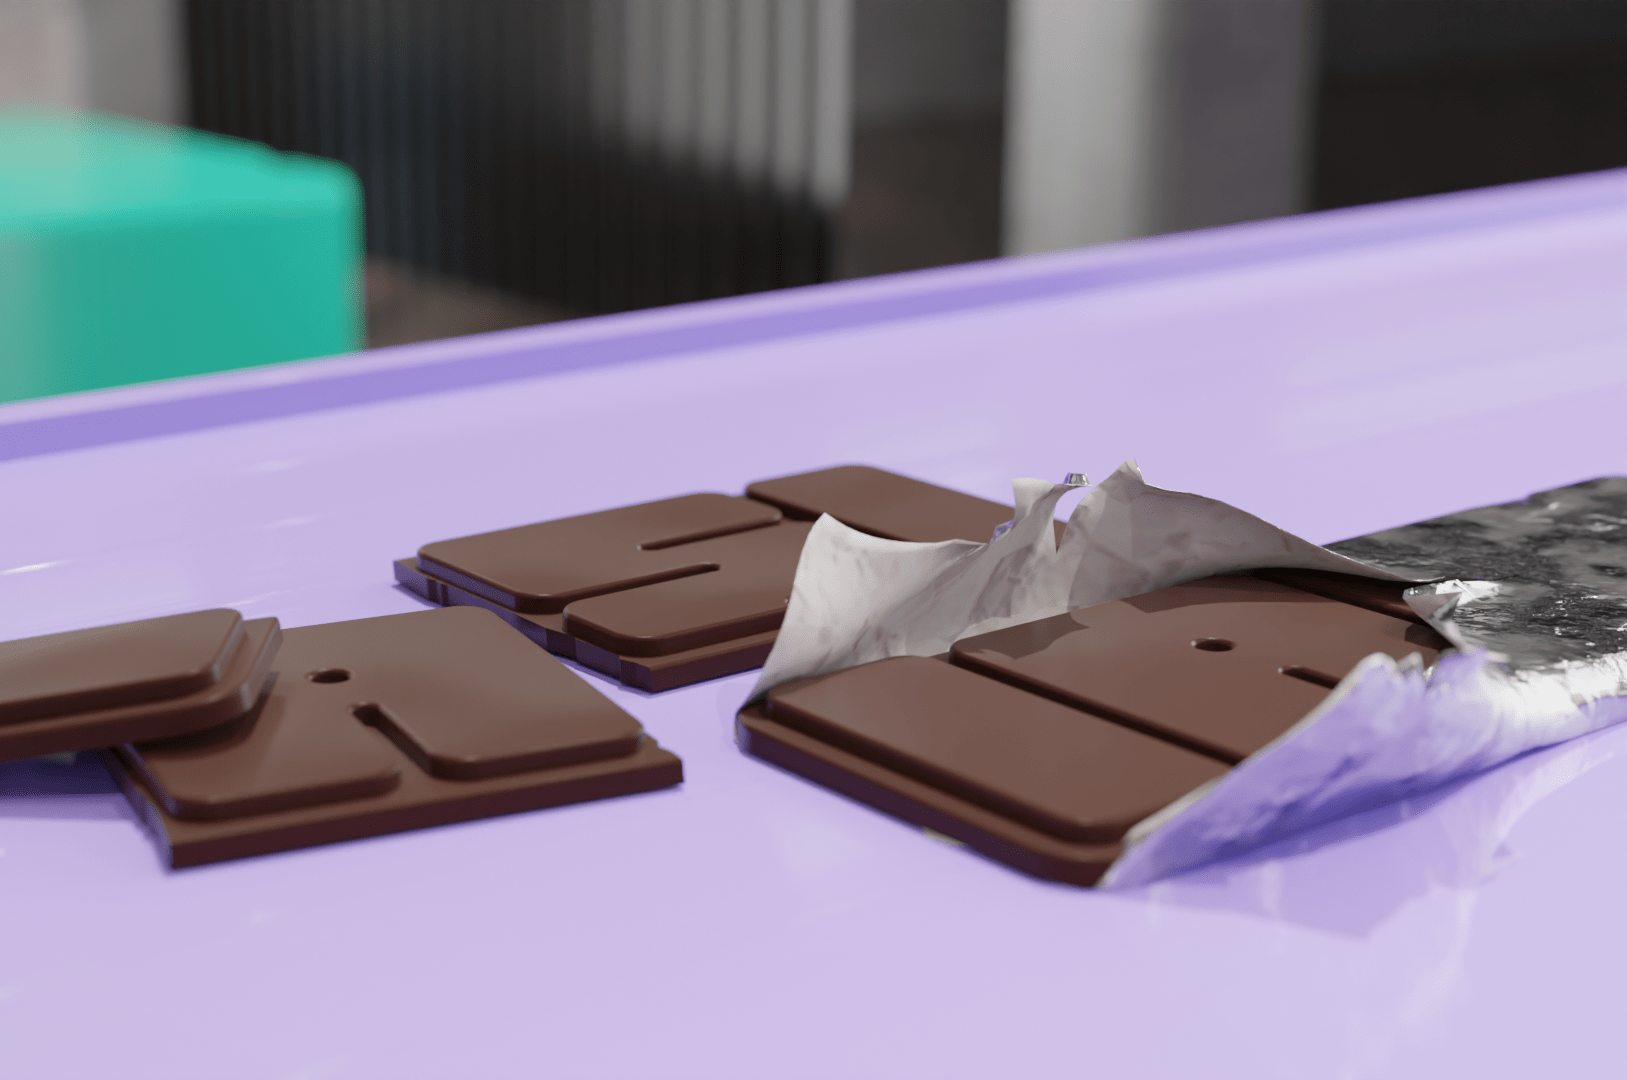  Până la sfărşitul anului s-ar putea lansa oficial ciocolata oraşului Iaşi, cu tablete de forma brandului